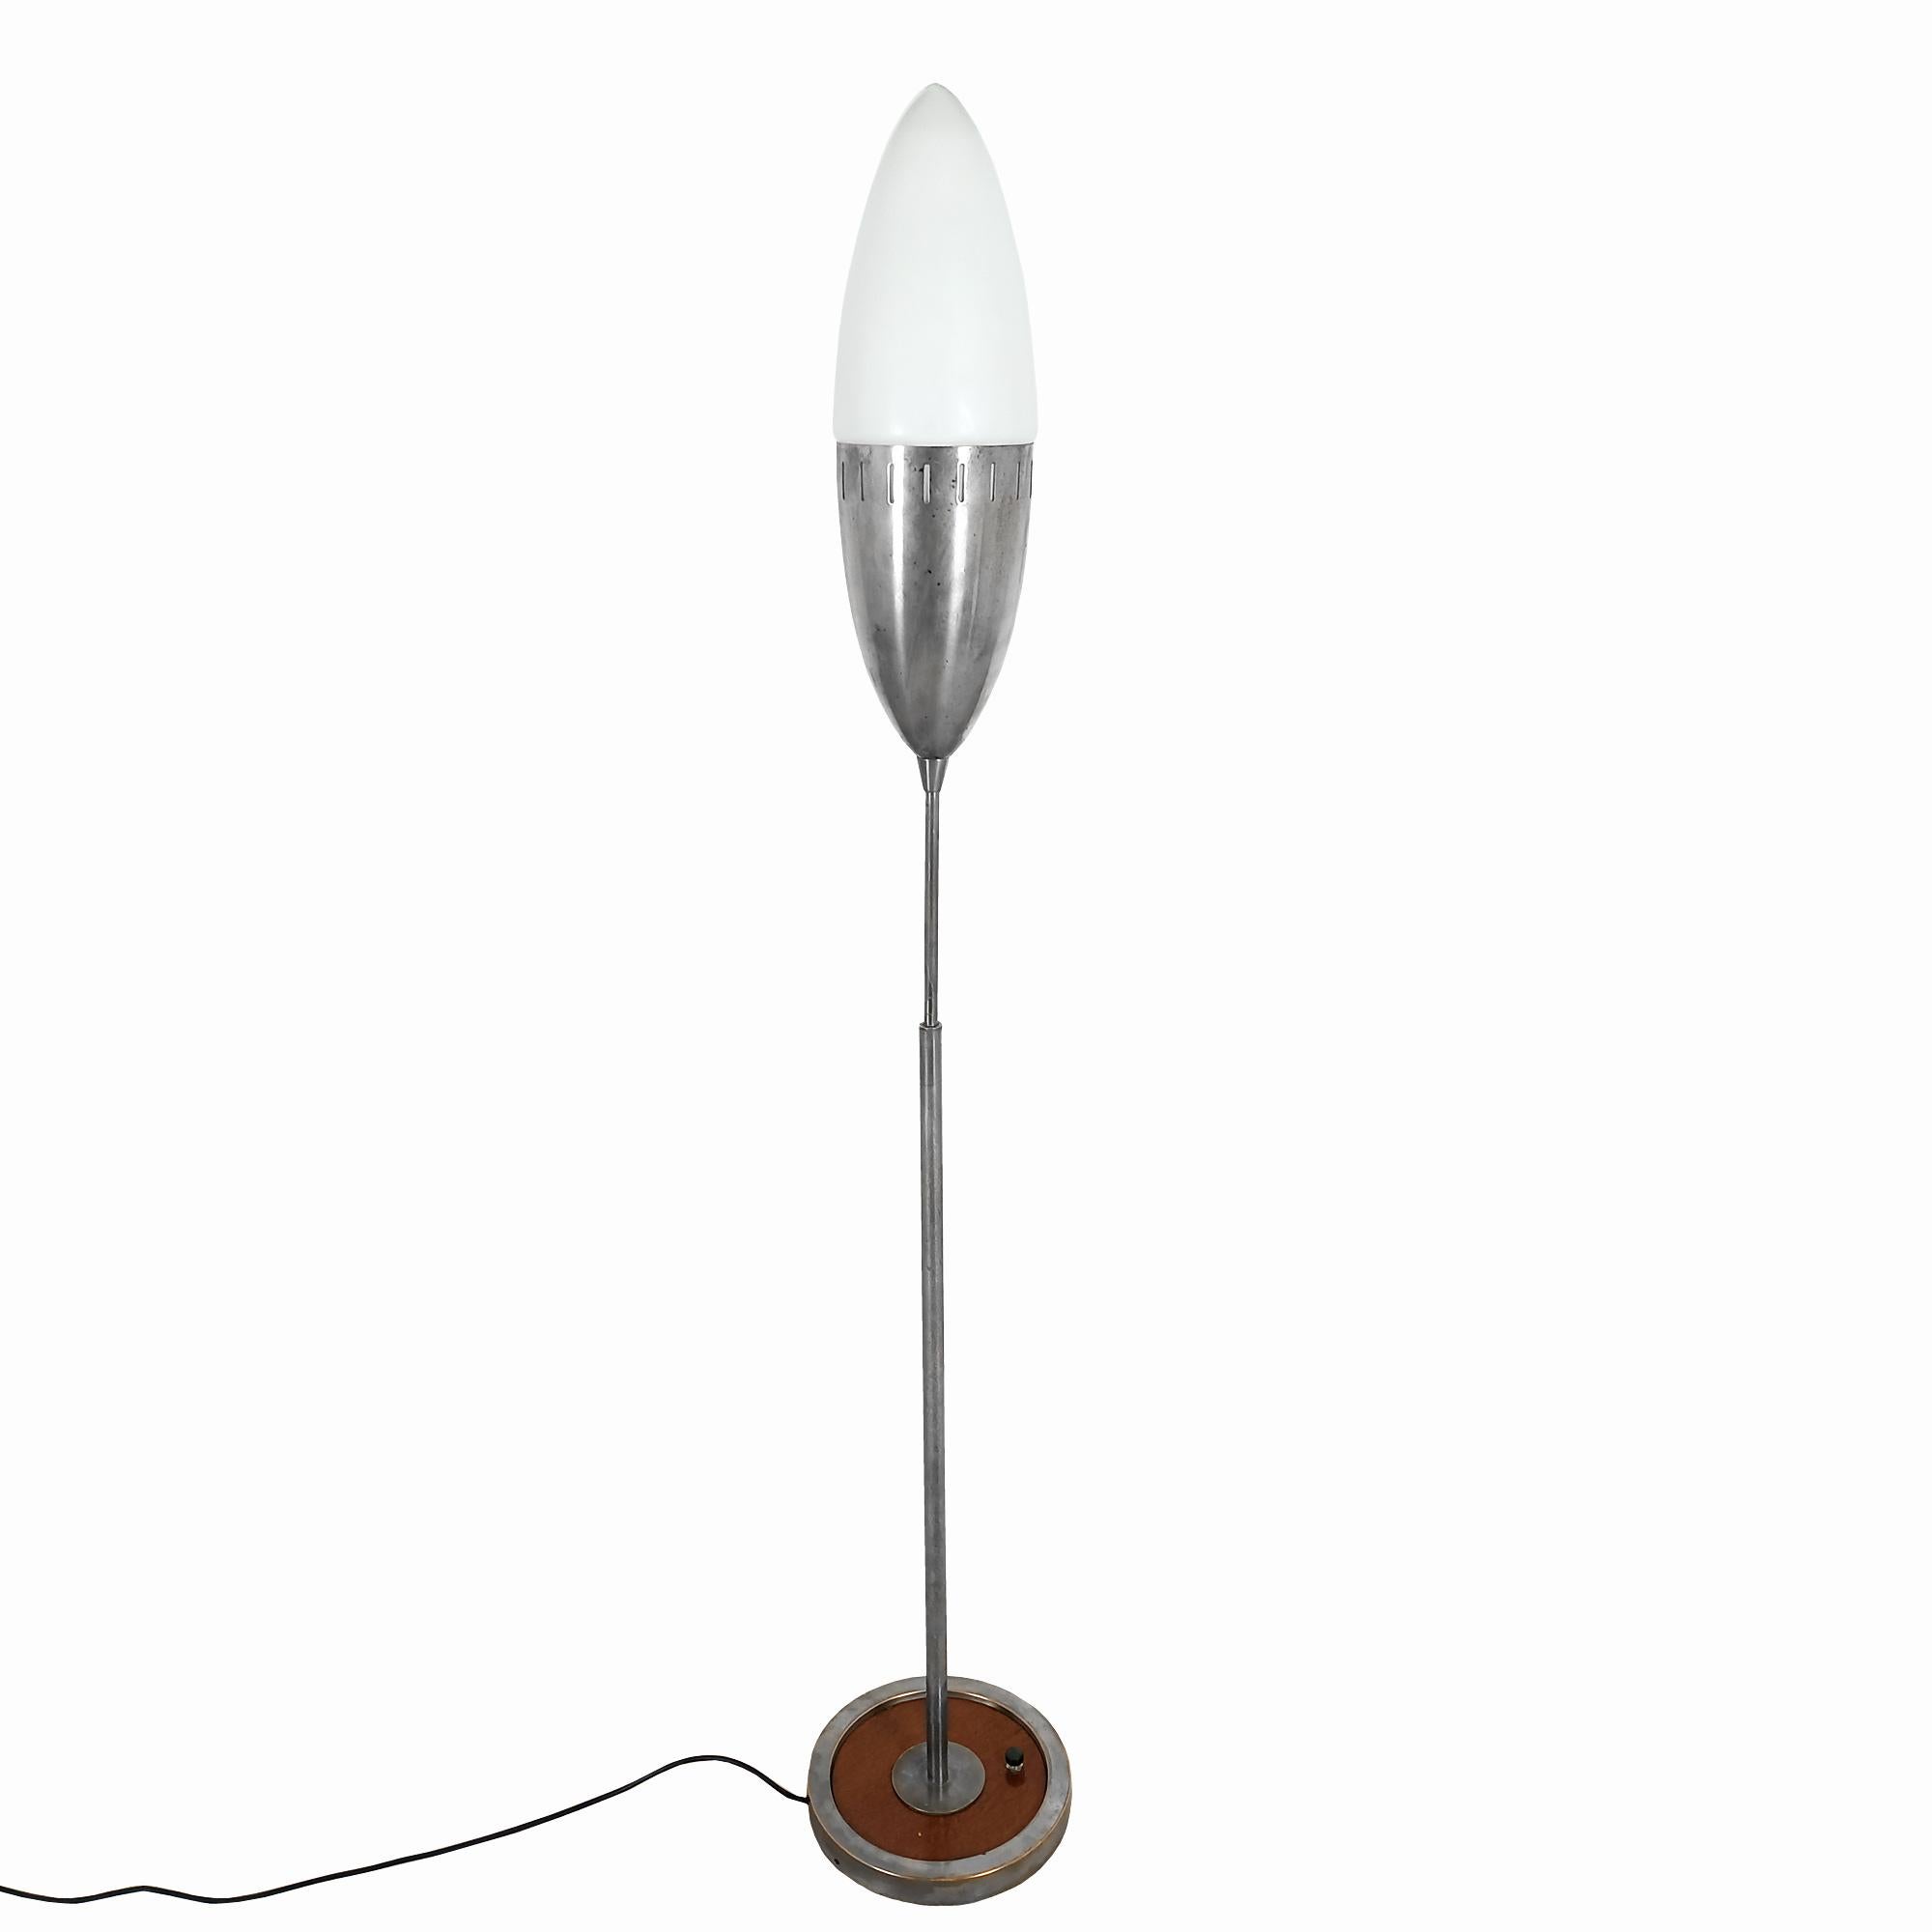 Lampe sur pied Stilnovo, base ronde en chêne et laiton nickelé, interrupteur d'origine, longue tige se terminant par un ovale allongé, moitié en laiton nickelé, moitié en verre opalin.

Italie vers 1950.